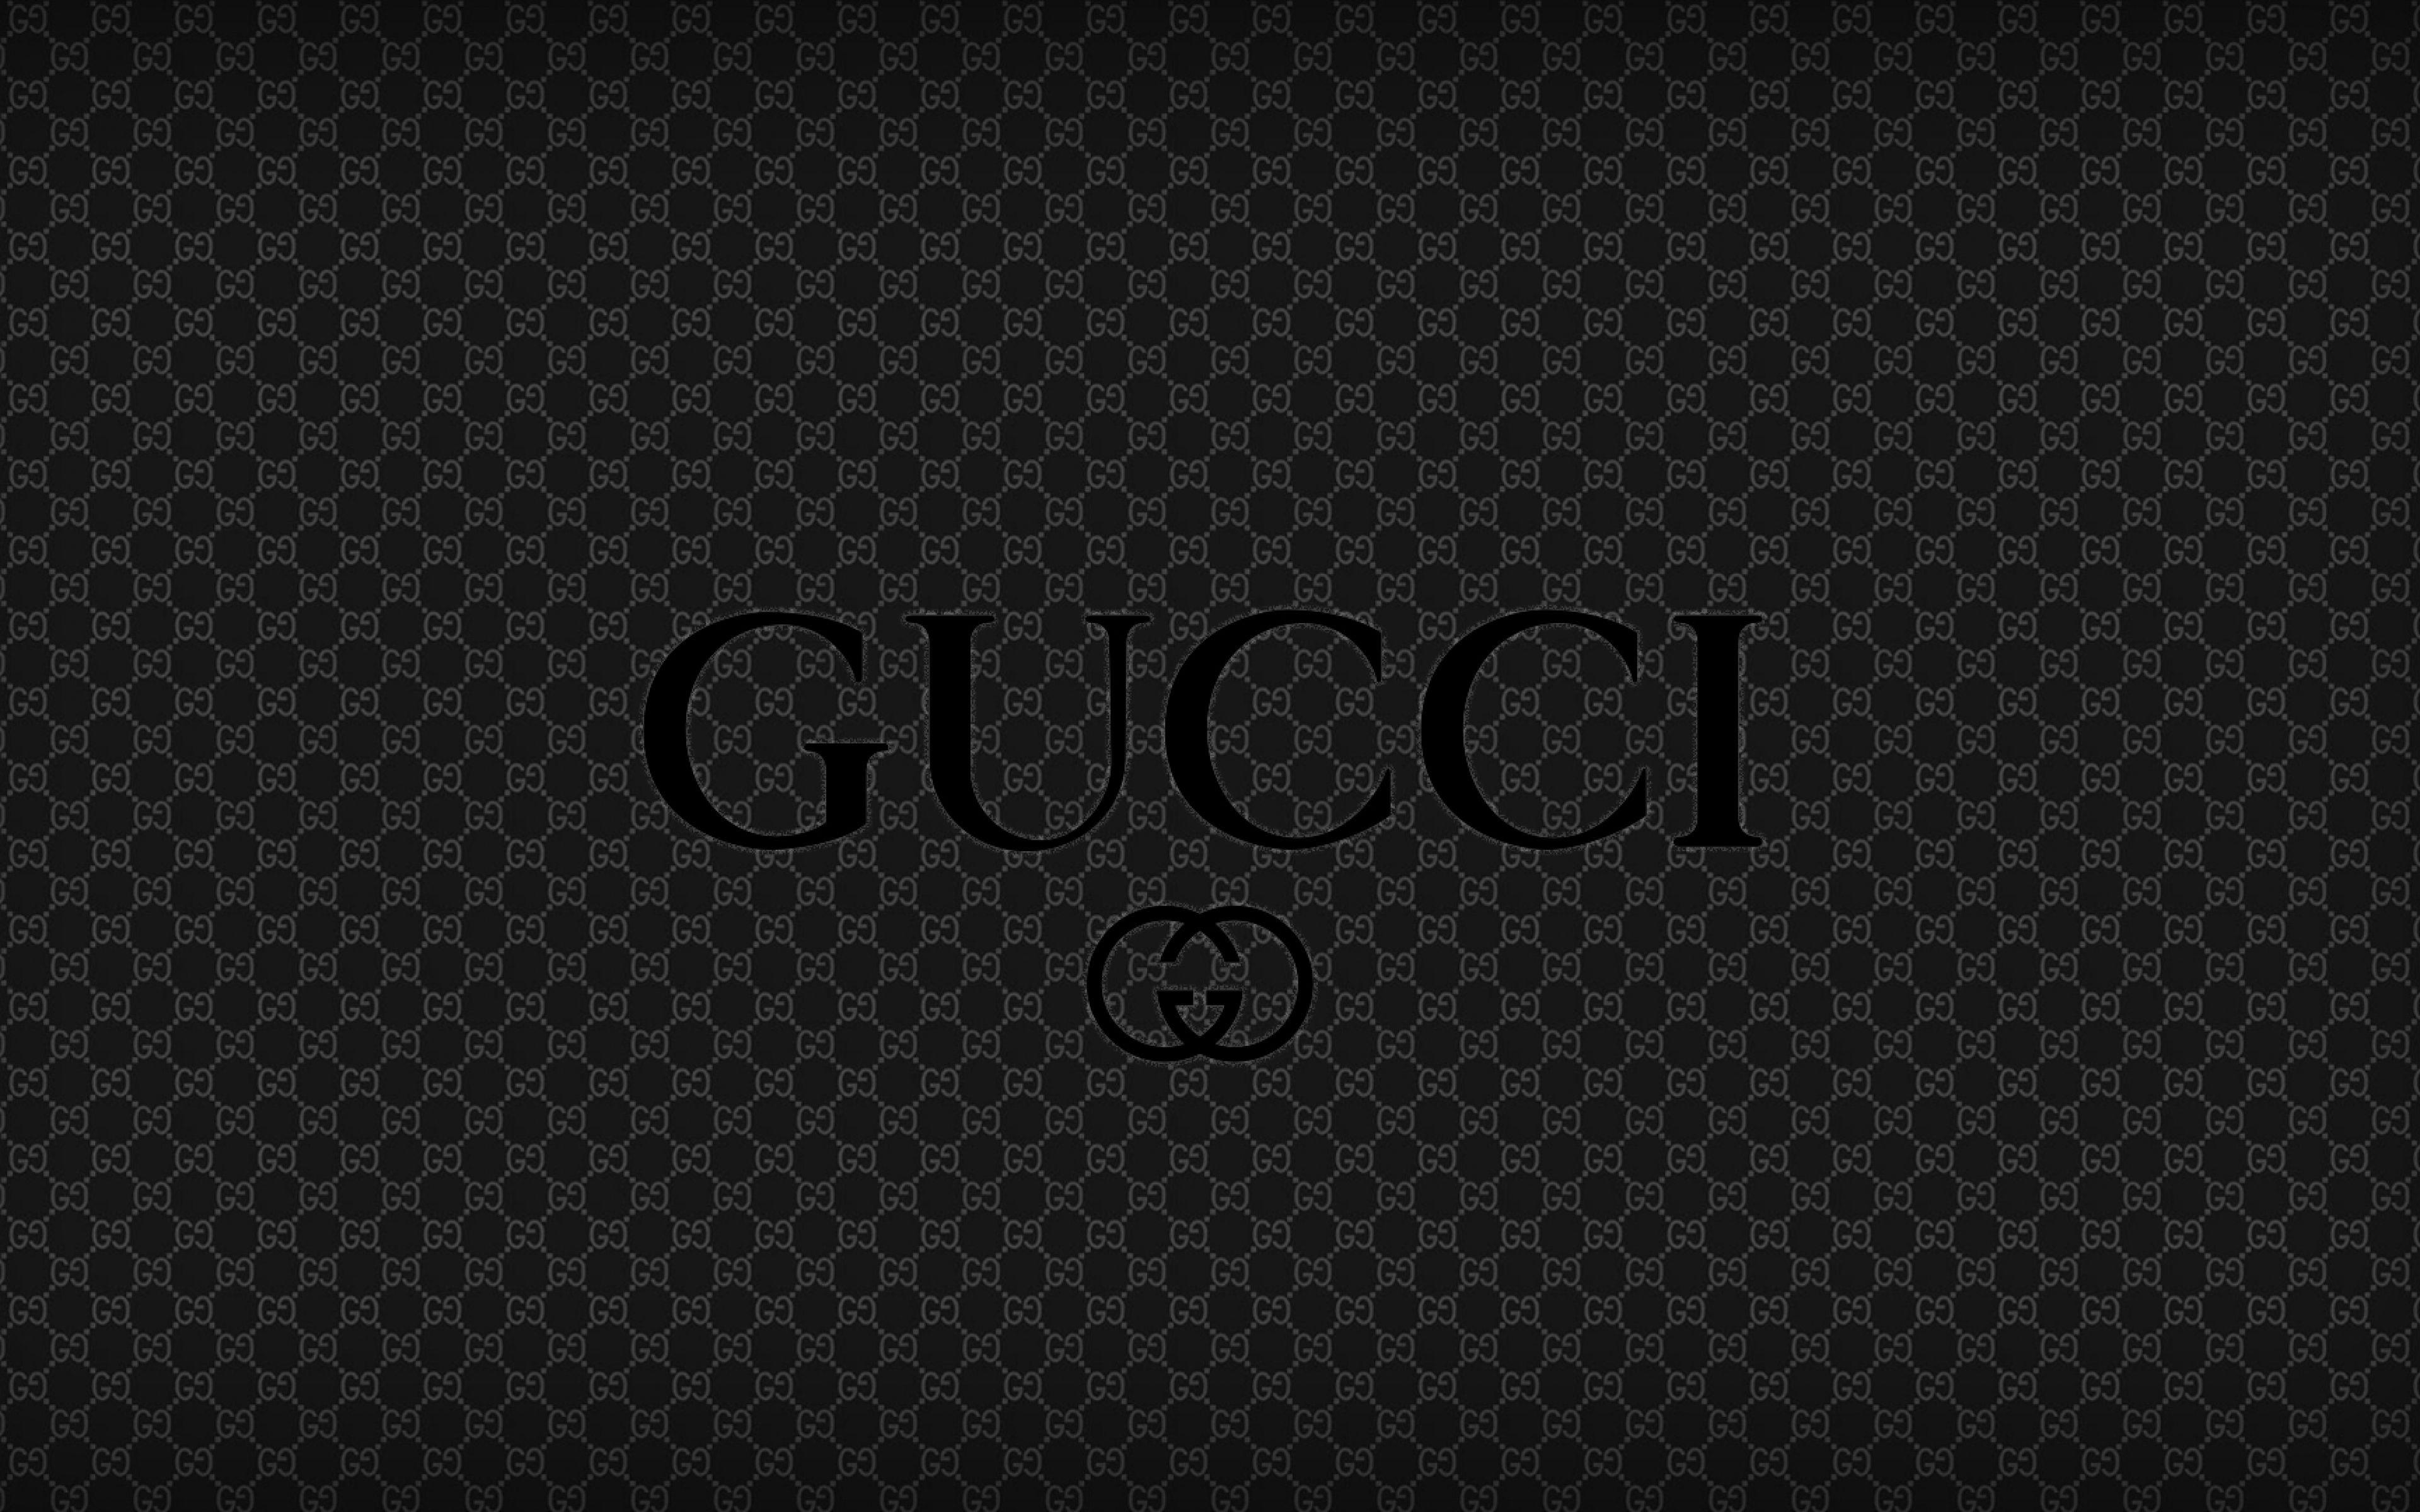 Gucci Snake Wallpaper - Gucci Snake Iphone Snakes Wallpapers Pantalla ...